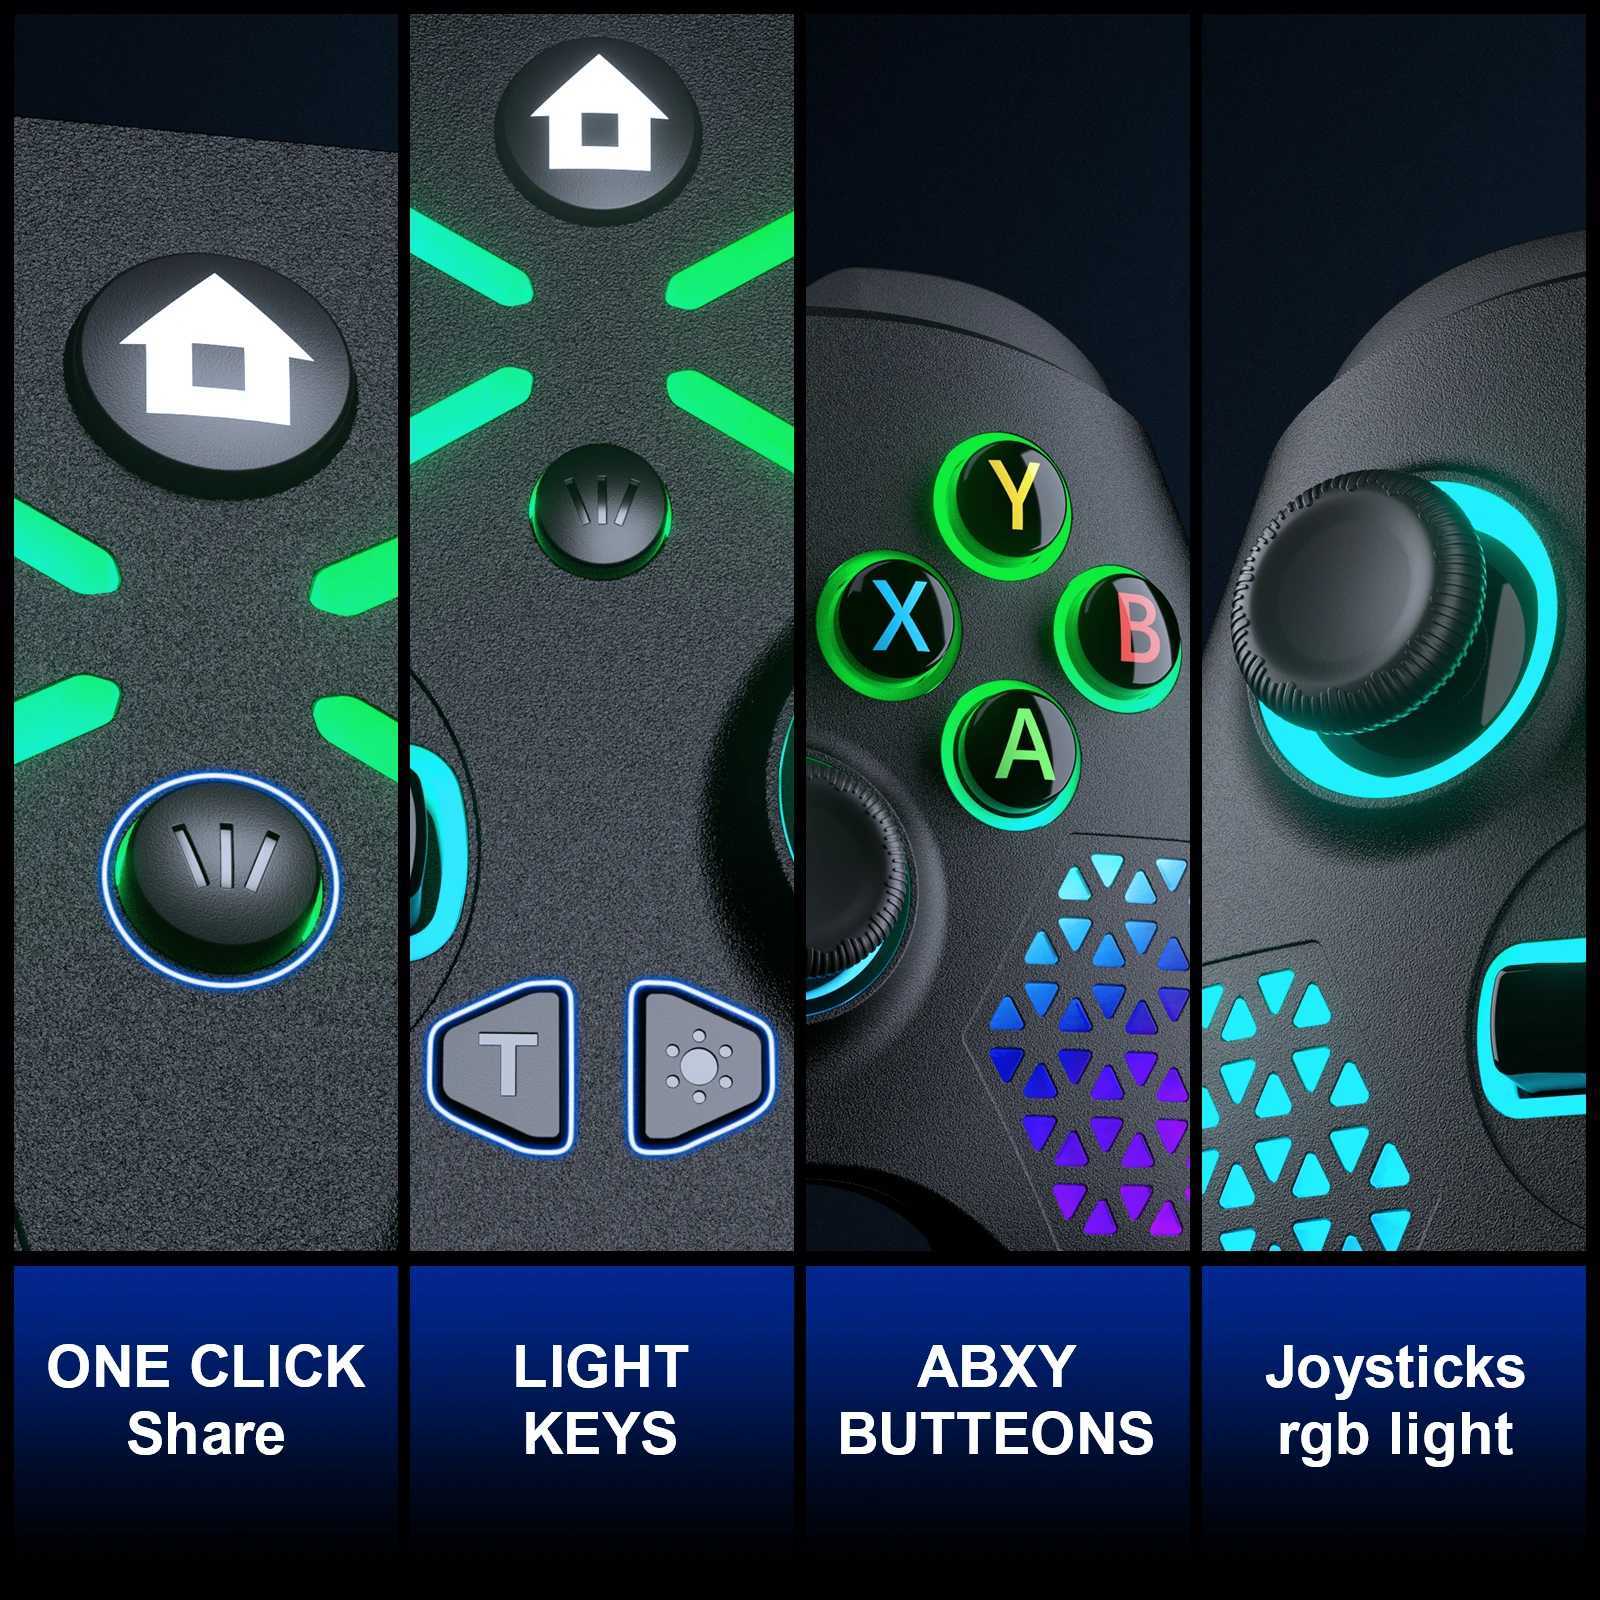 S Joysticks Wireless 2.4G pour Switch / Xbox One / série S / X GamePad pour Android / Windows PC Controller pour le jeu Wegame / Team Joystick J240507